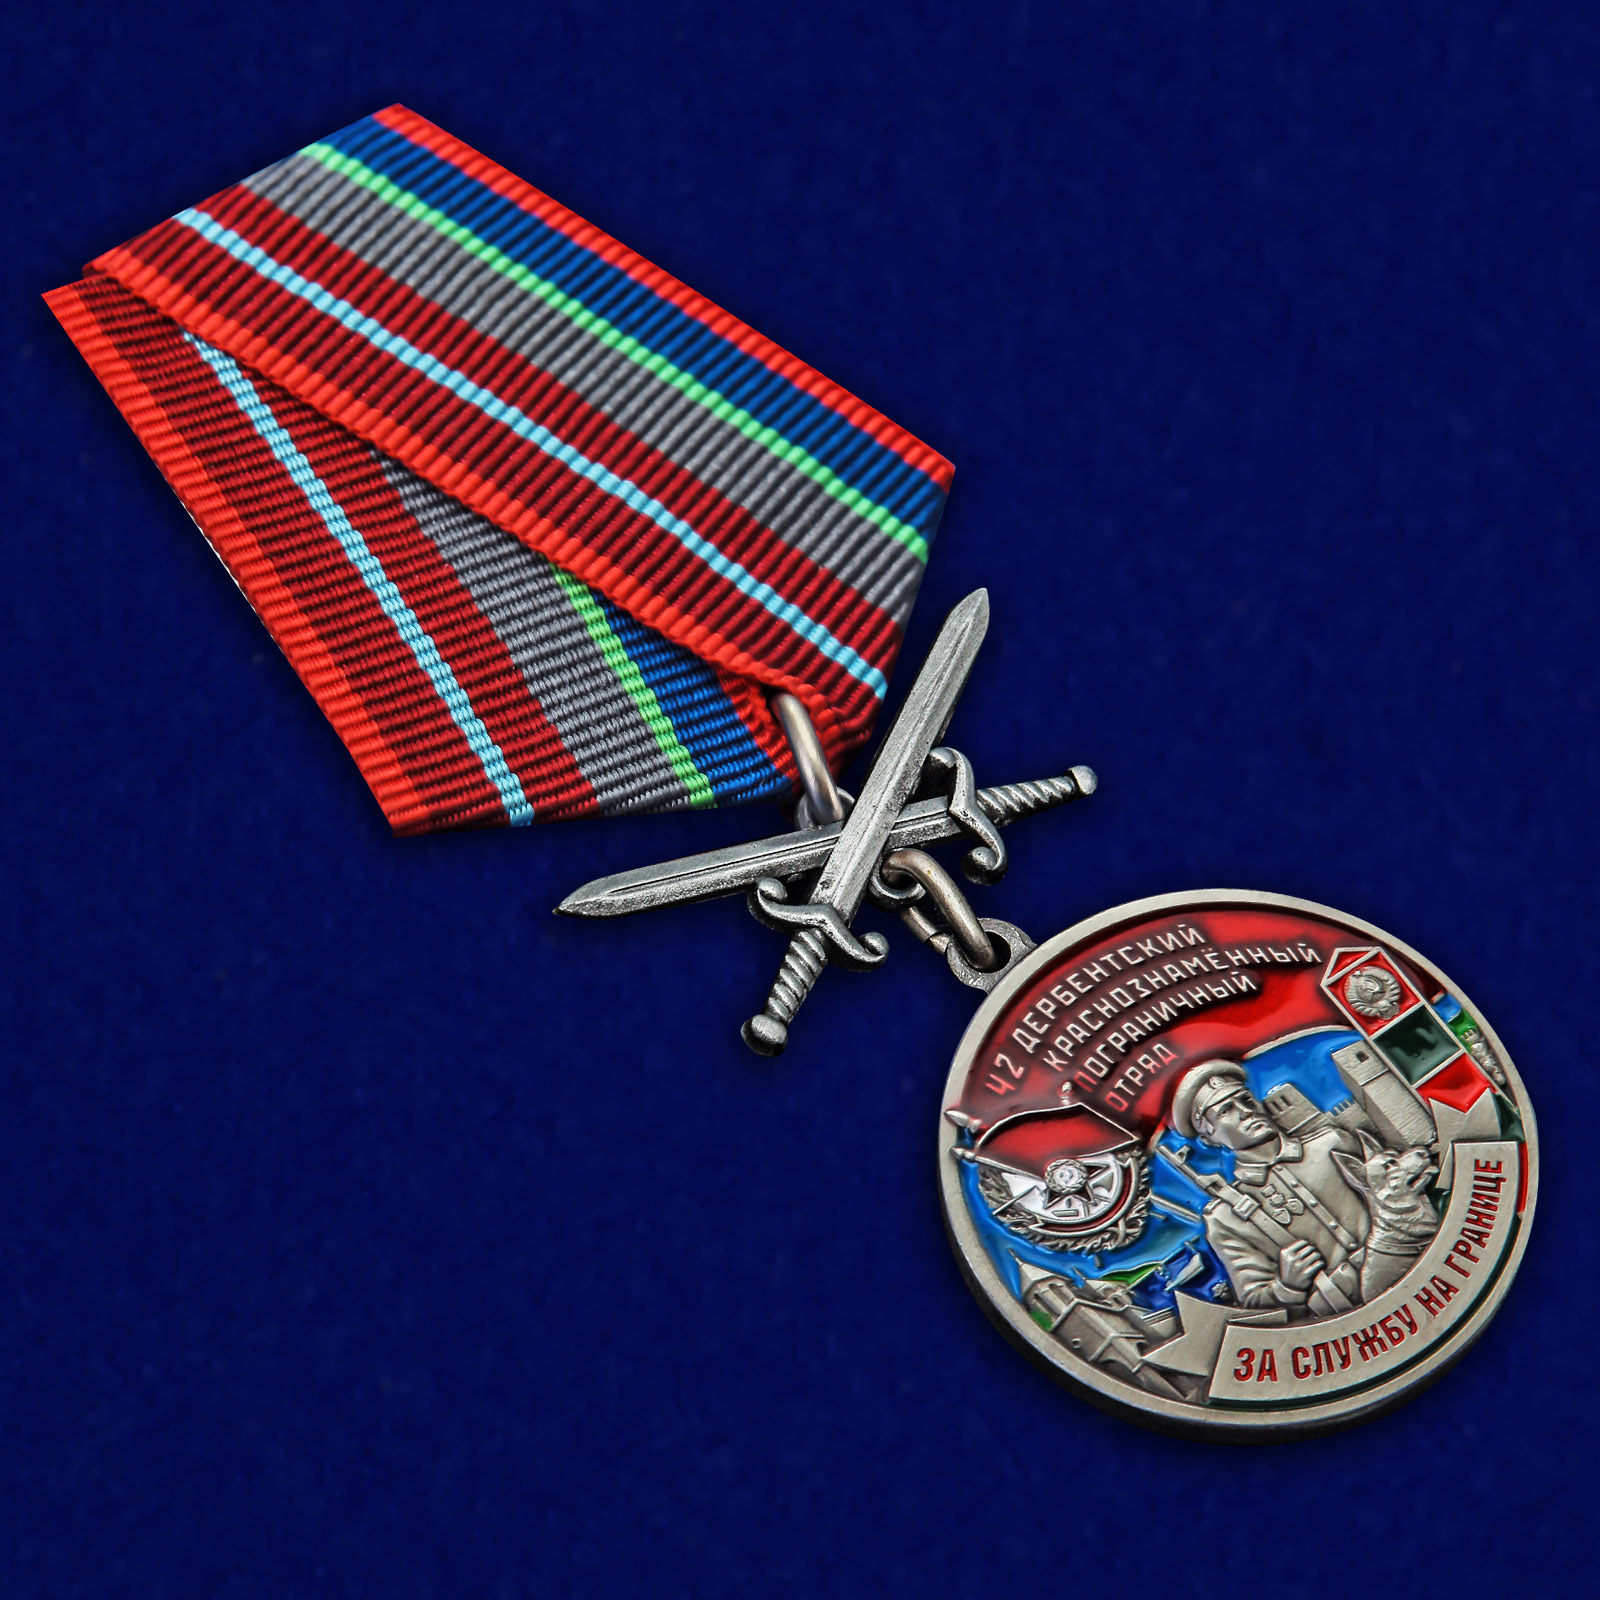 Купить медаль "За службу в Дербентском пограничном отряде"